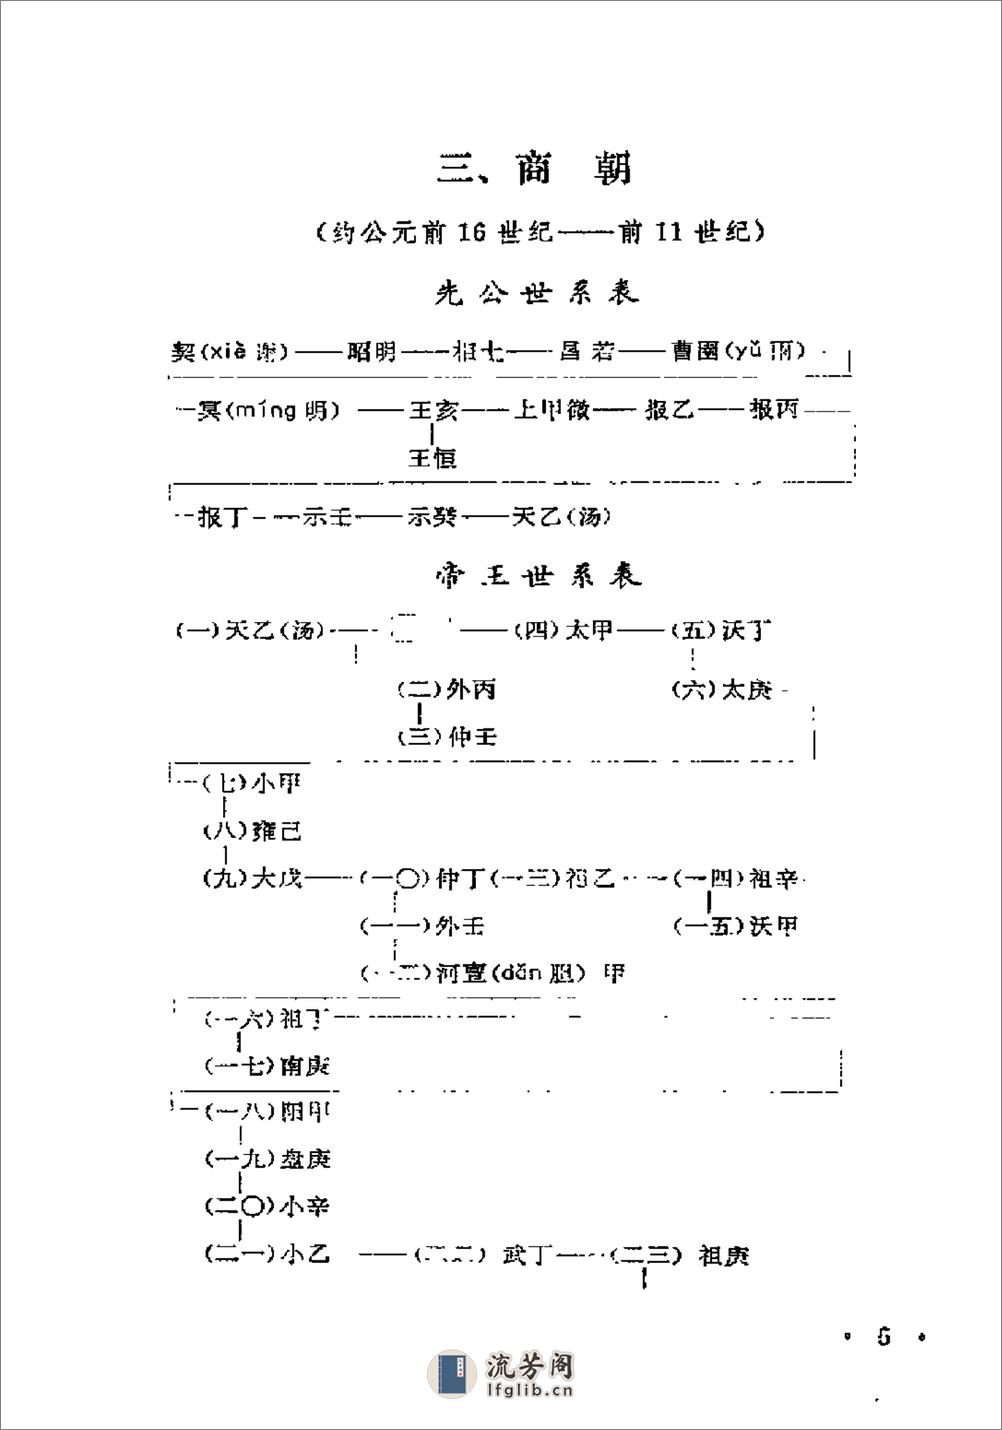 中国历史纪年简表·陈作良·中央党校1985 - 第18页预览图